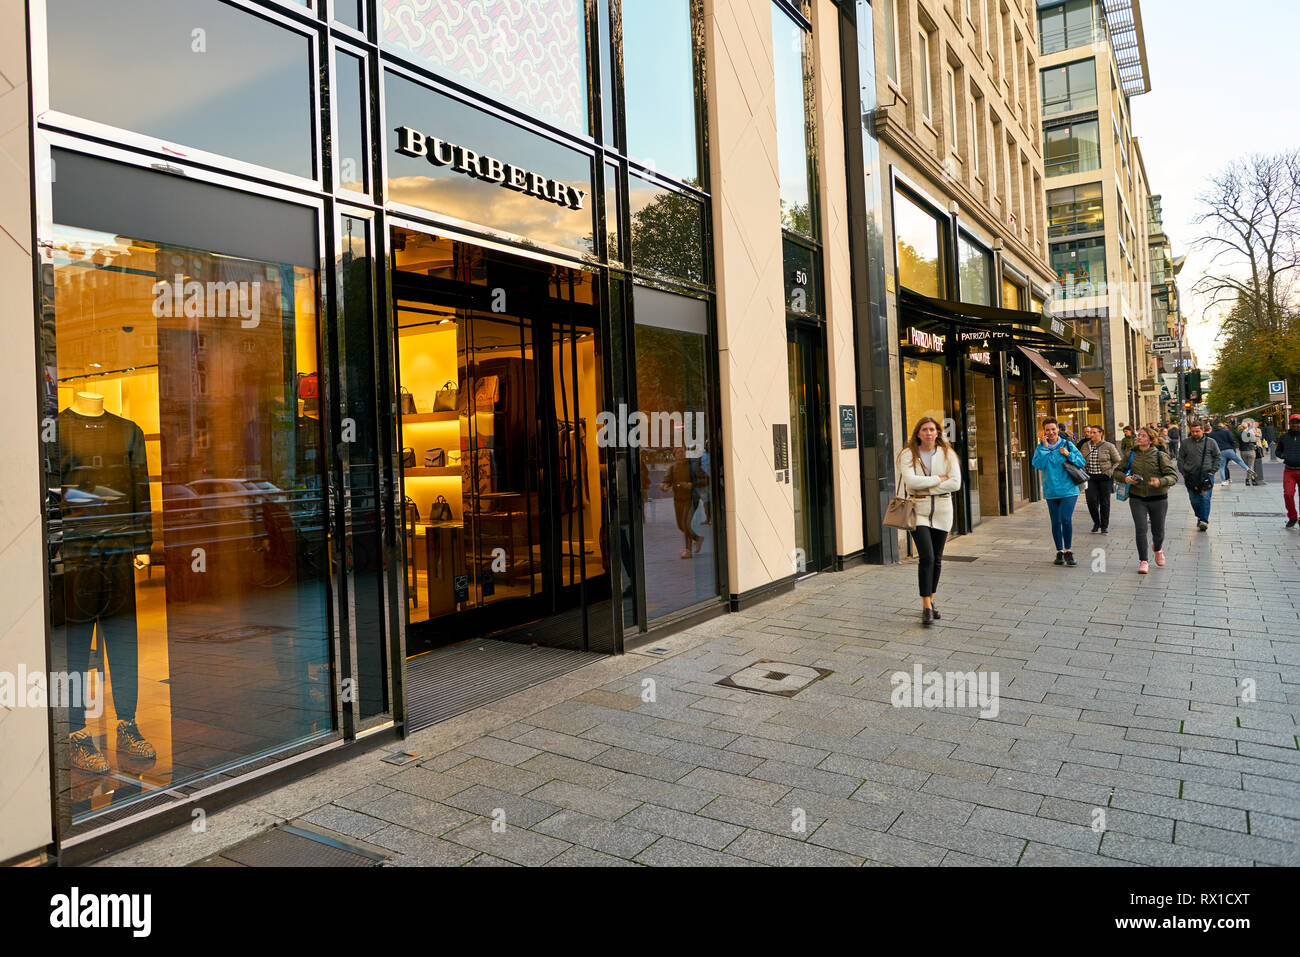 Düsseldorf, Deutschland - ca. September 2018: Eingang und Display bei  Burberry shop in Düsseldorf Stockfotografie - Alamy